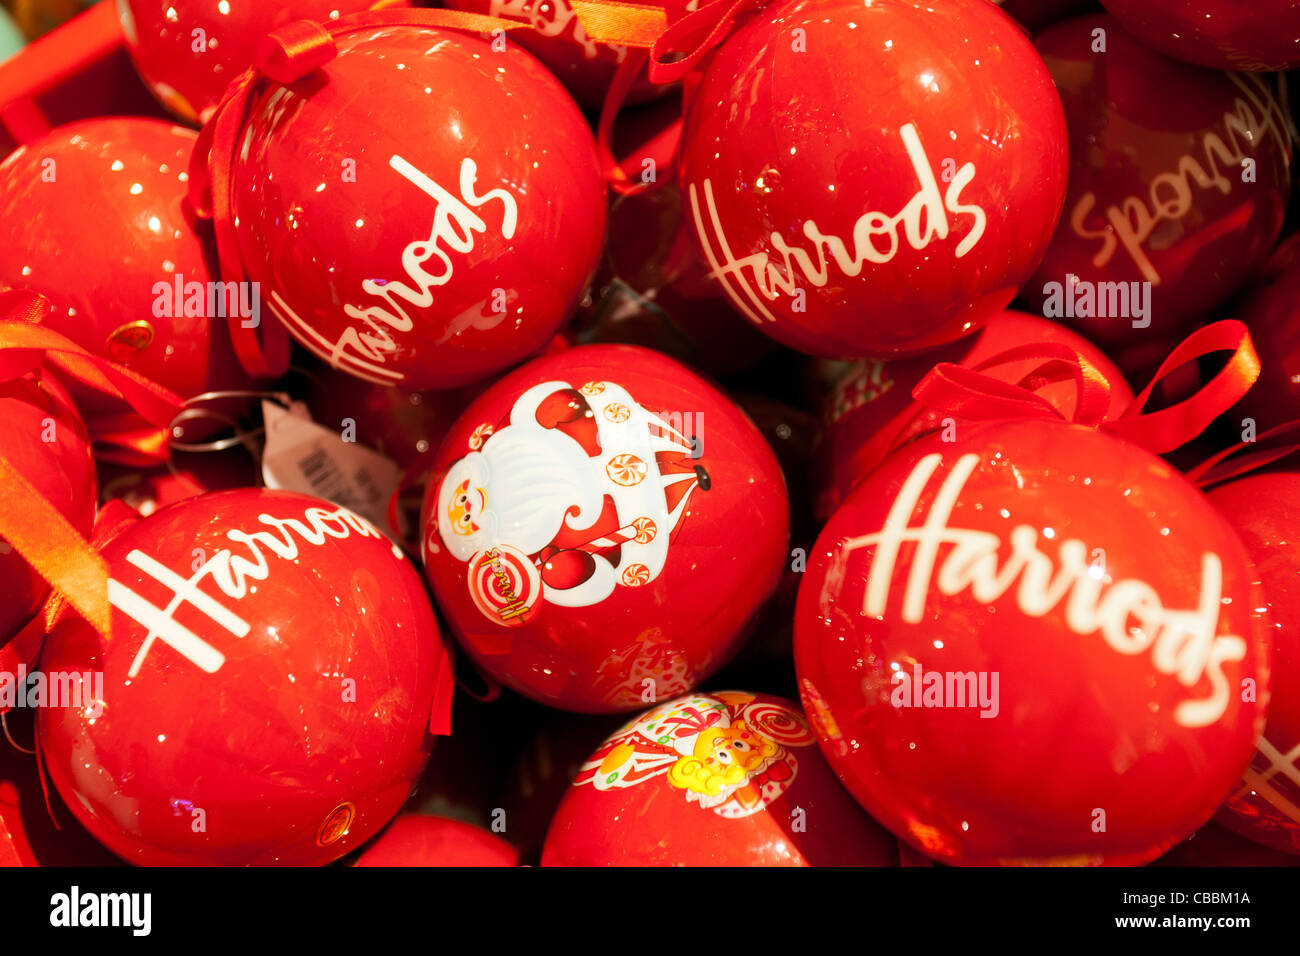 Harrods christmas immagini e fotografie stock ad alta risoluzione - Alamy